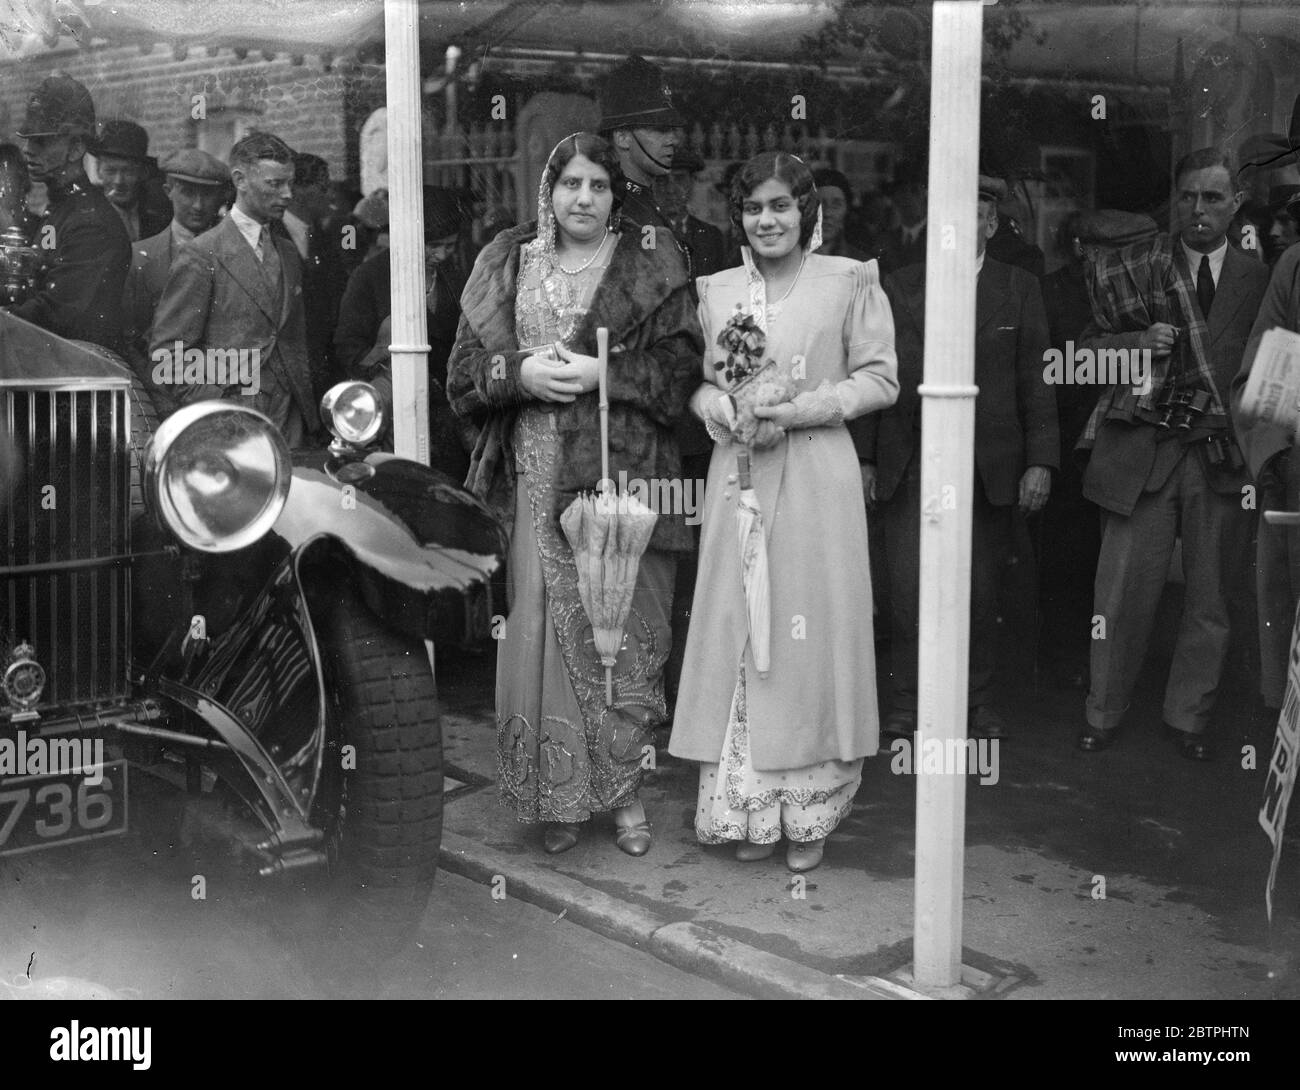 Indische Besucher nach Ascot . Trotz des trüben und regnerischen Wetters besuchten die üblichen modischen Massen die Eröffnung des Royal Ascot Renntreffens. Foto zeigt ; Lady Dhunjibhoy Bomanji ( links ) mit ihrer Tochter . 13 Juni 1933 Stockfoto